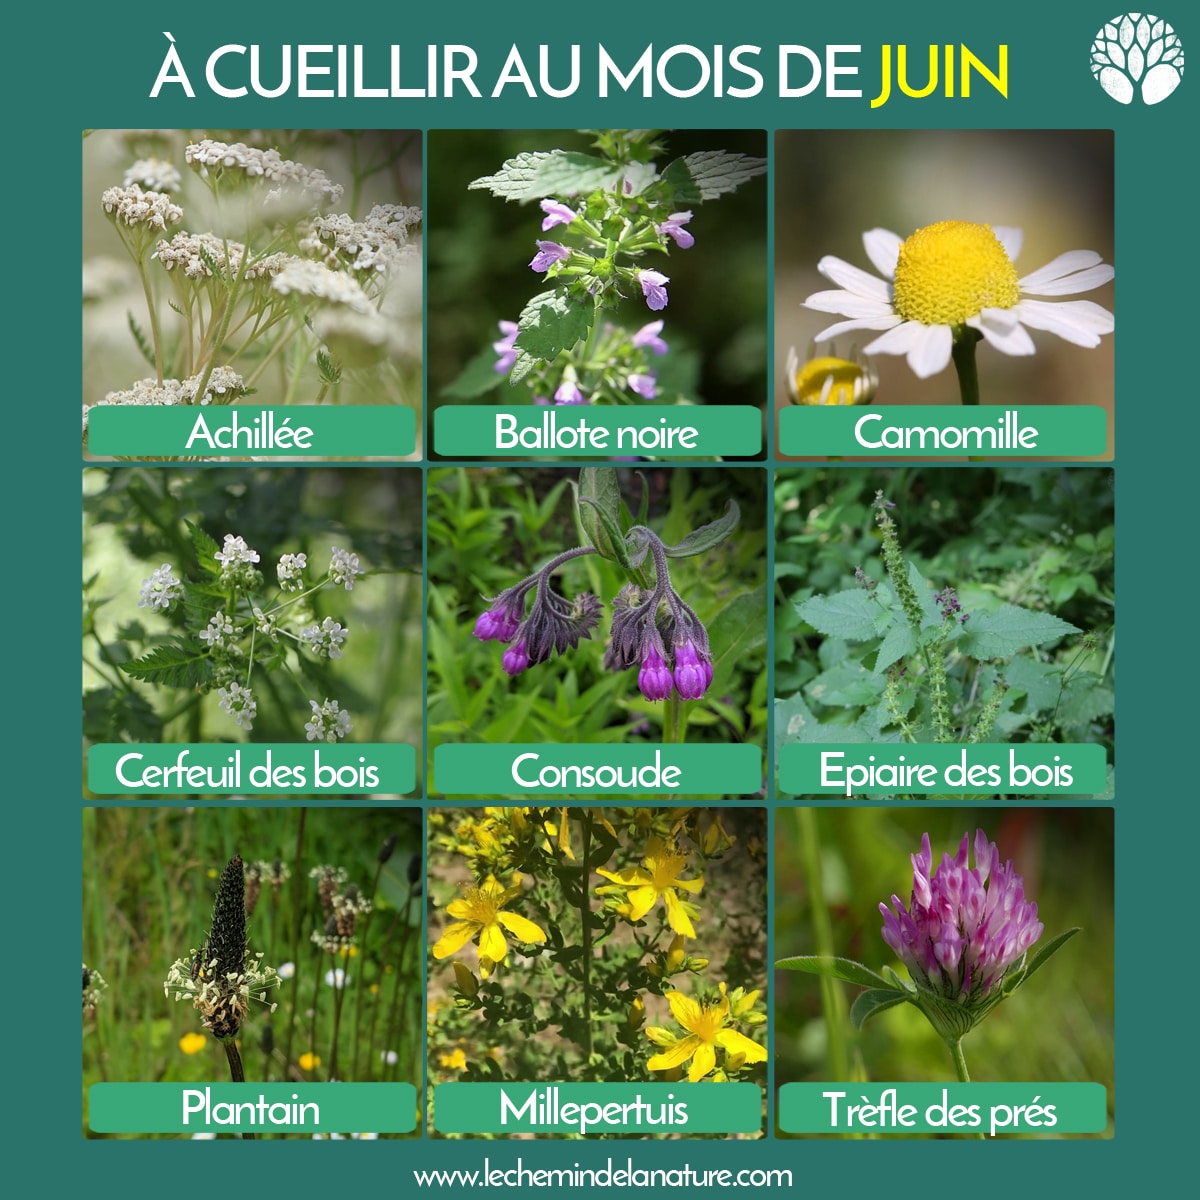 calendrier cueillette plantes sauvages juin